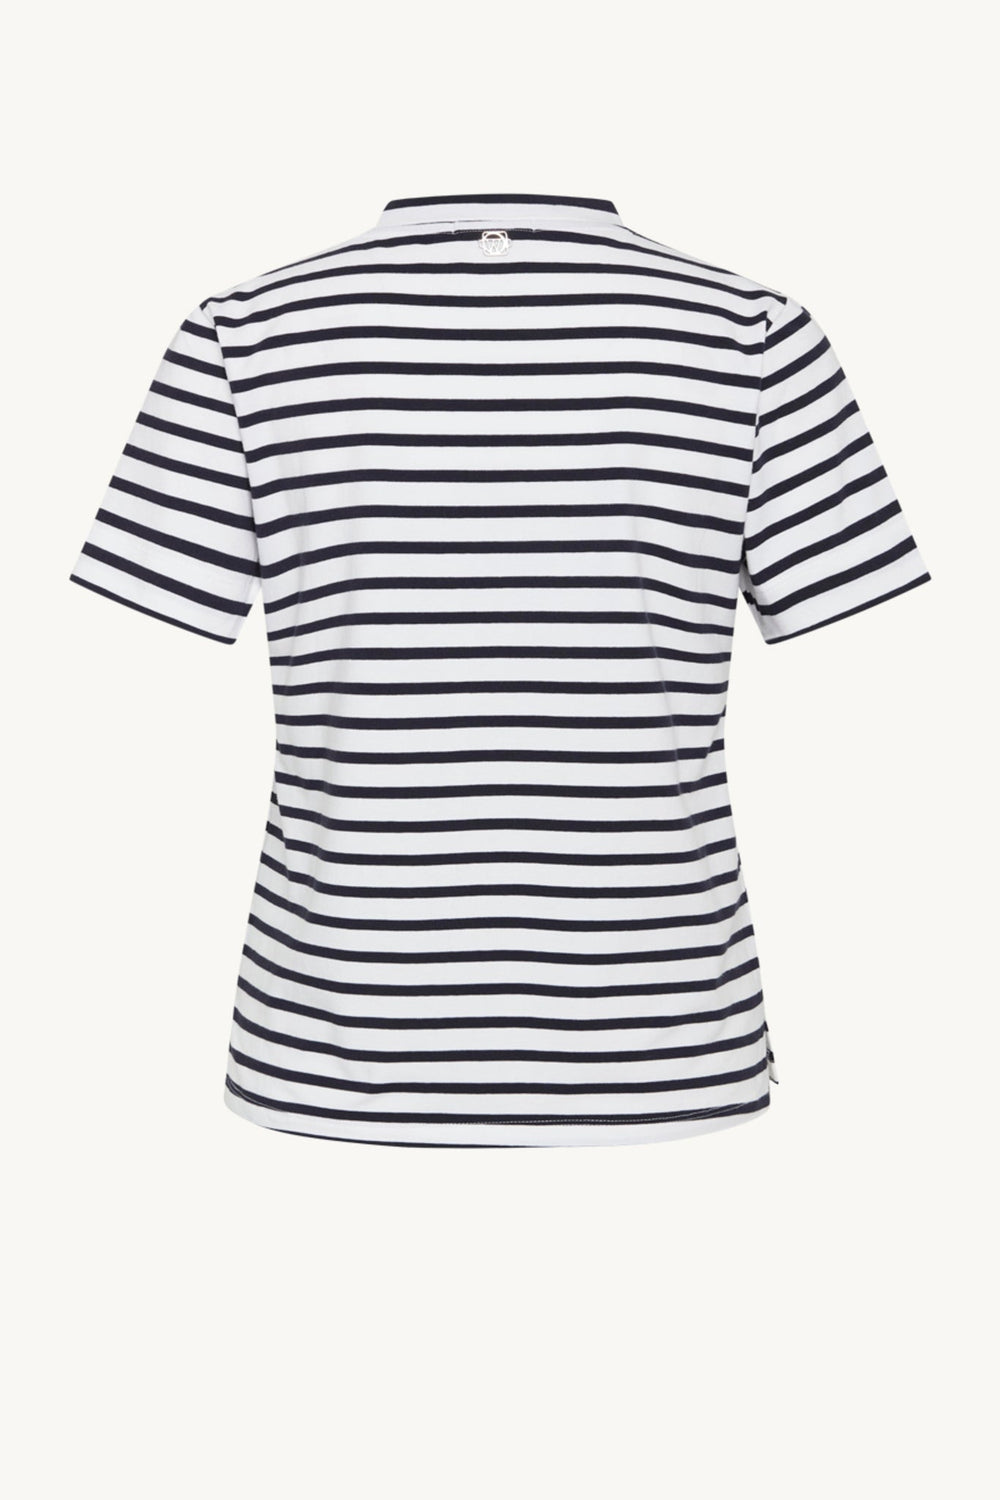 Aurora-Cw T-Shirt Dark Navy | Skjorter og bluser | Smuk - Dameklær på nett